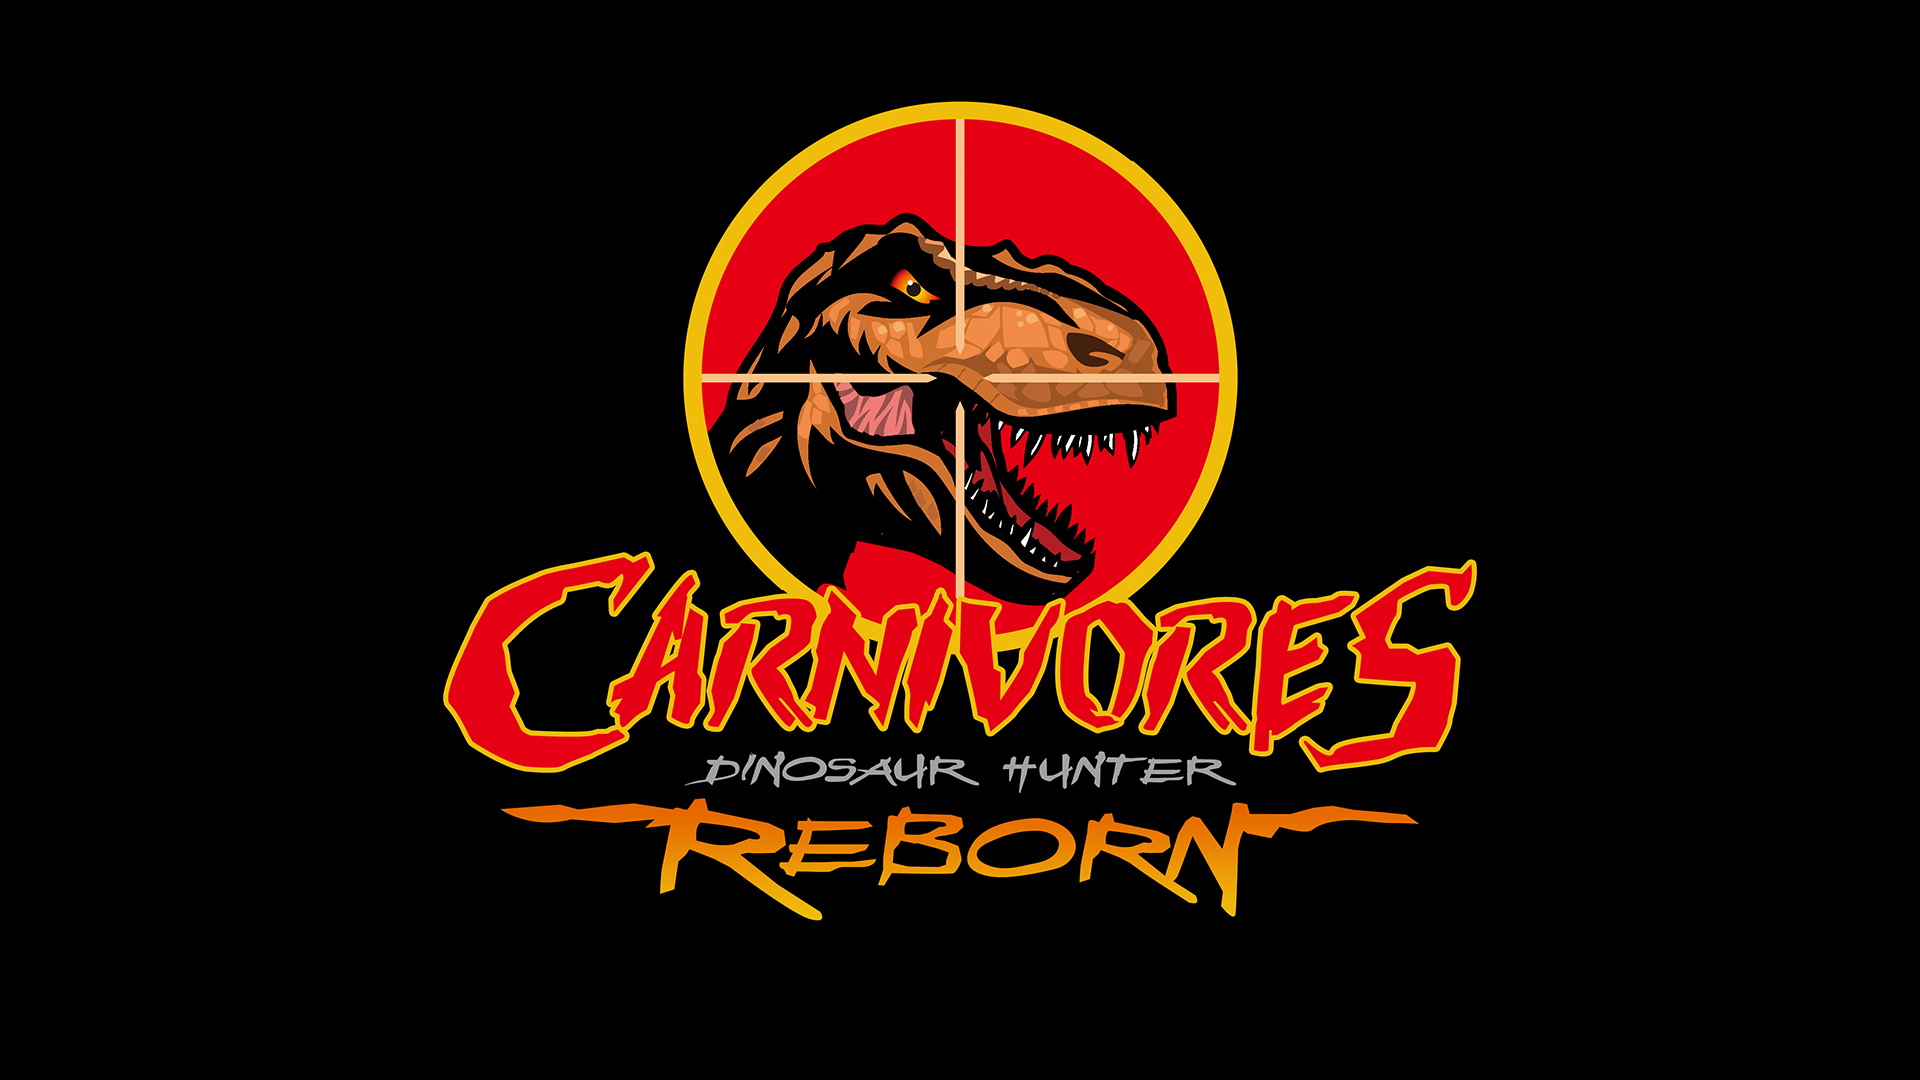 Carnivores dinosaur hunter reborn steam фото 1